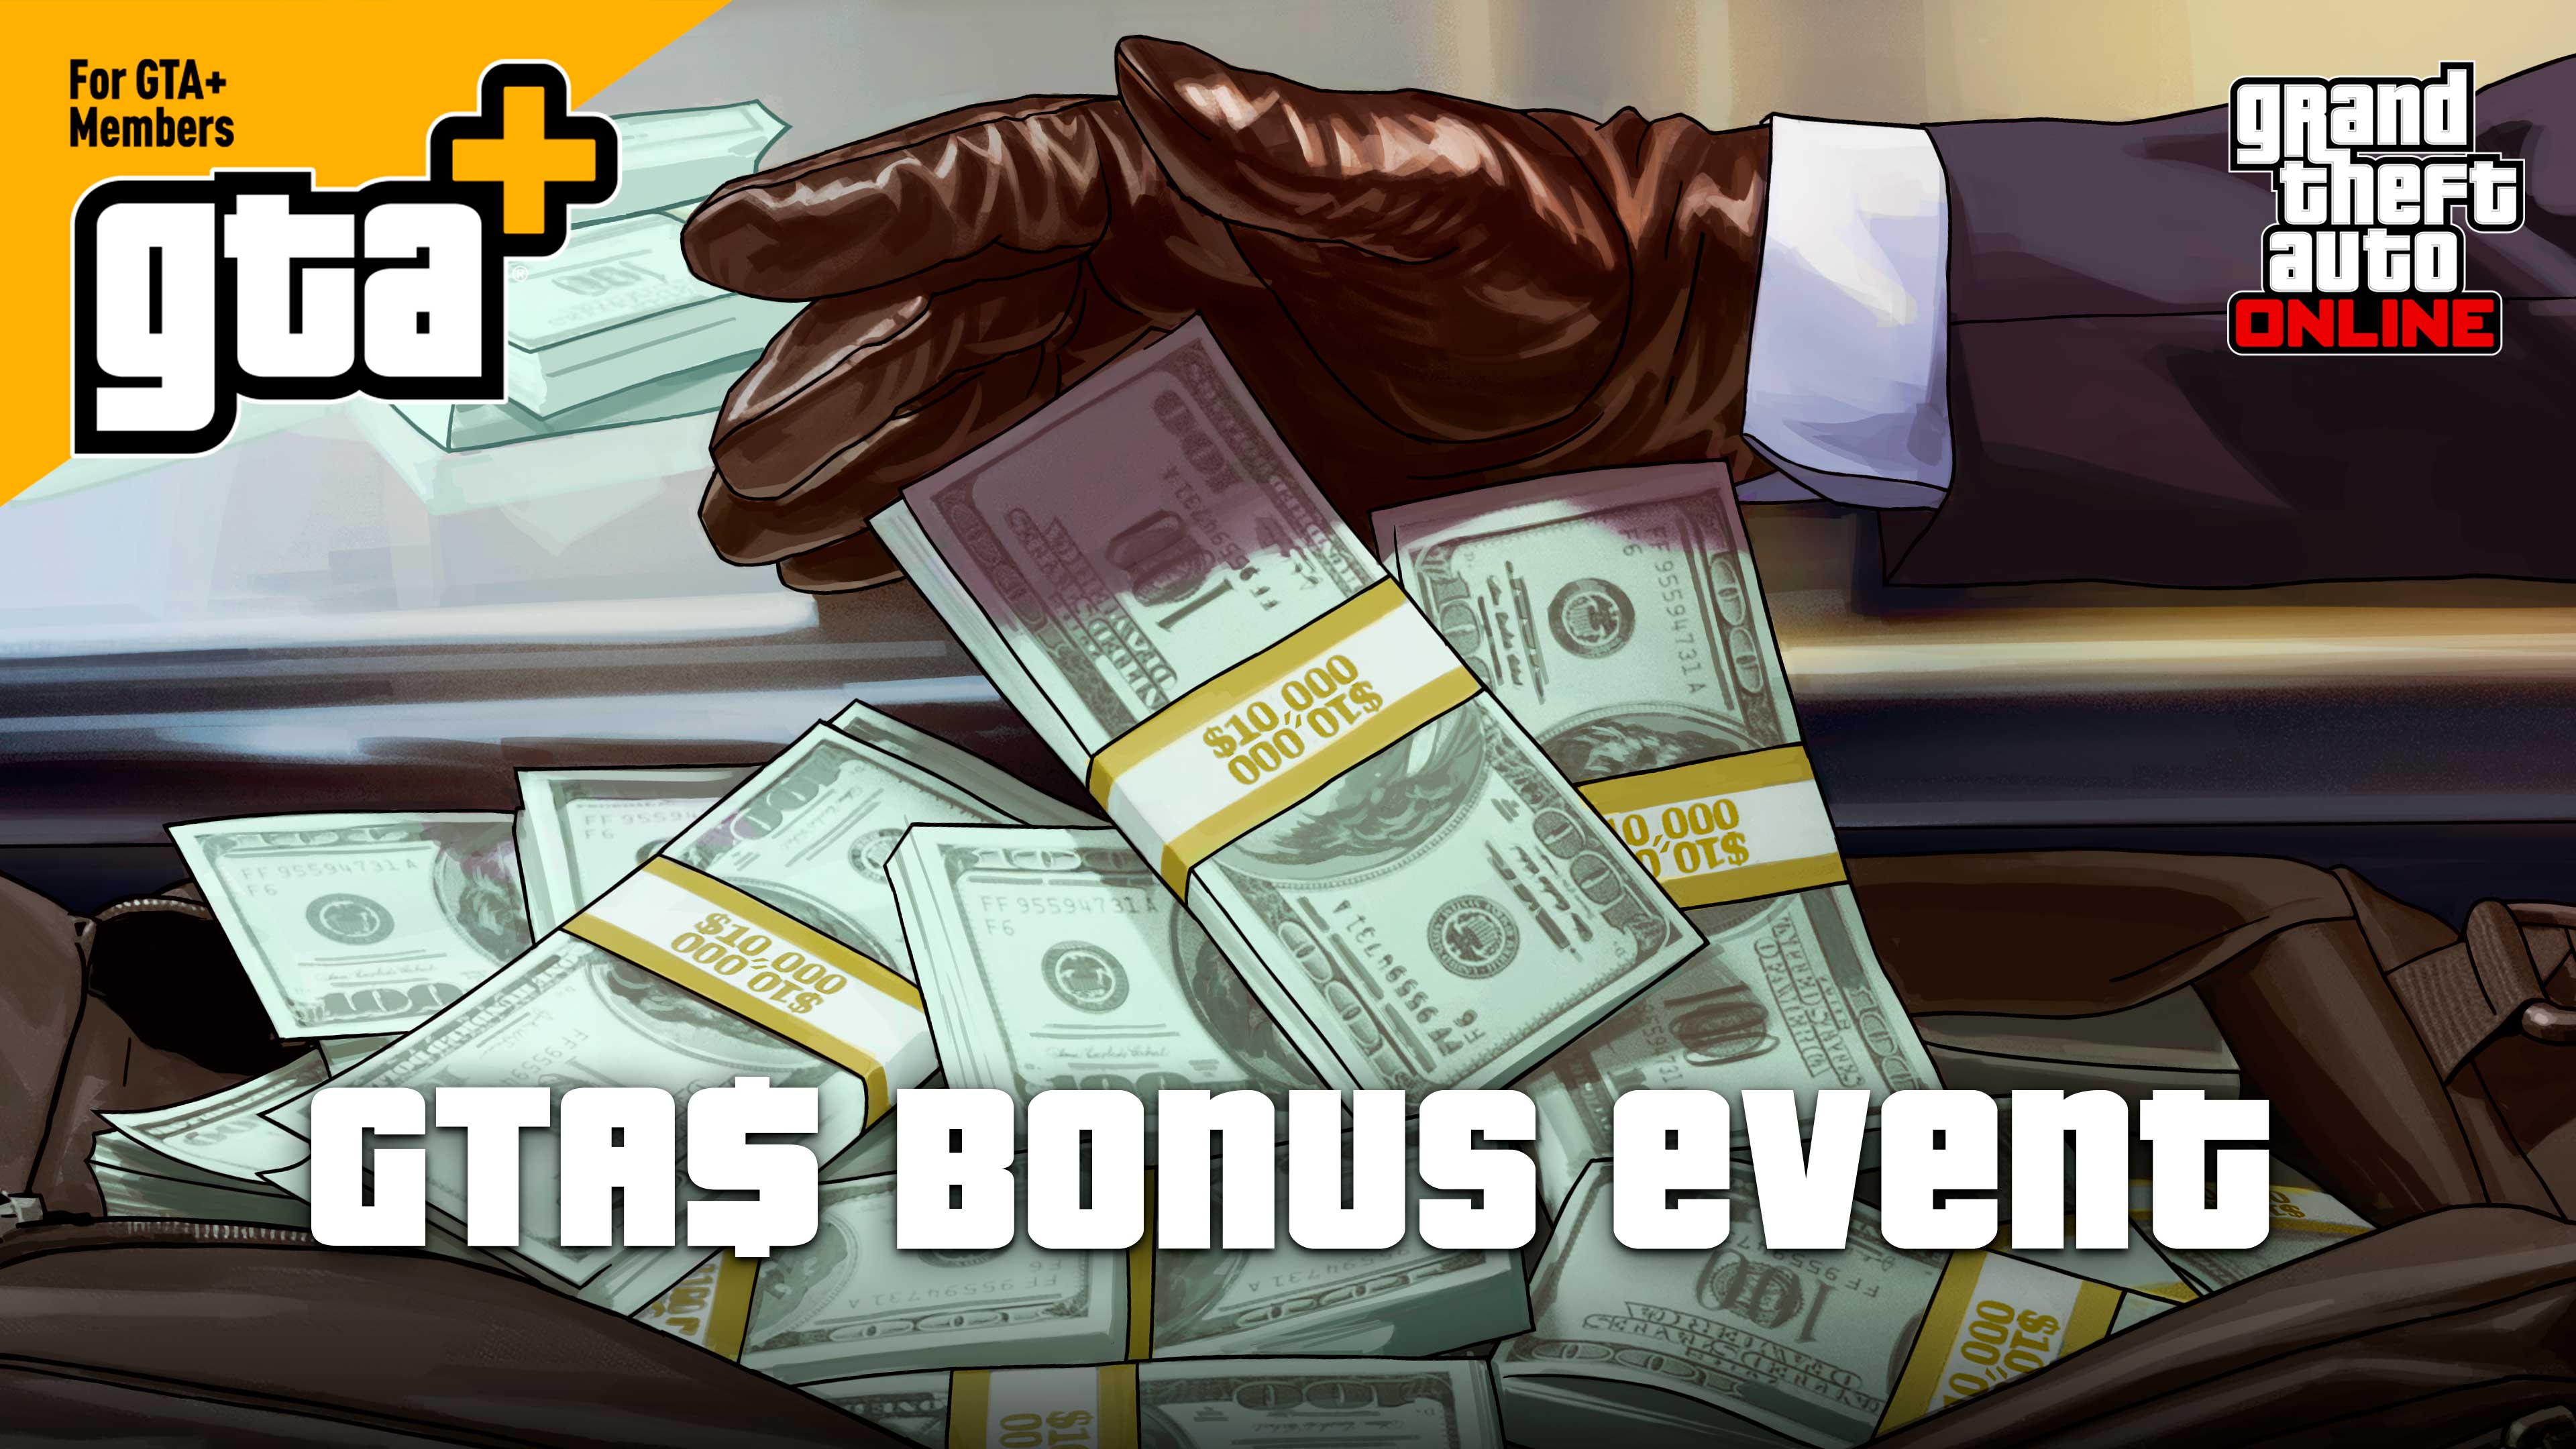 Pôster do evento bônus GTA$ com uma mão enluvada guardando dinheiro em uma sacola.